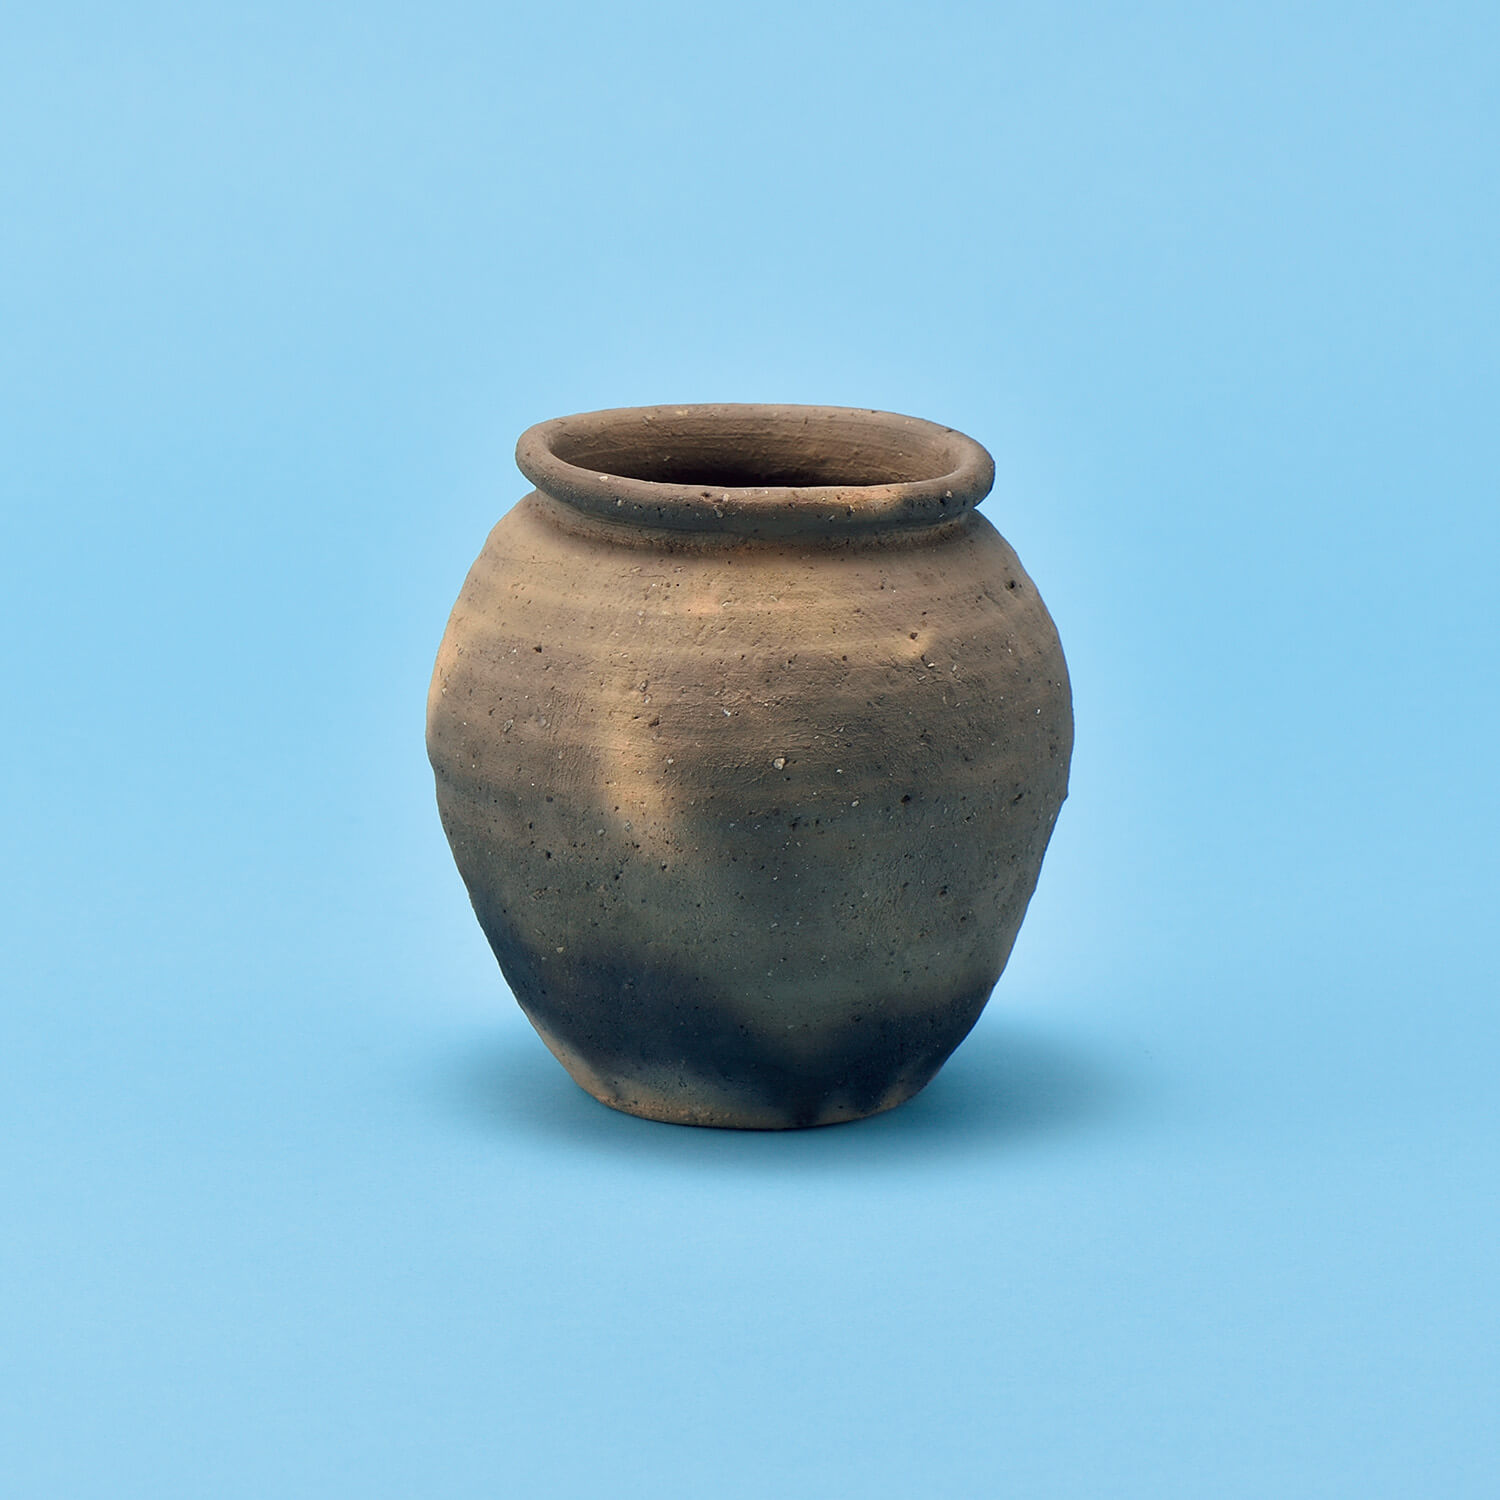 熊谷幸治の土器壺